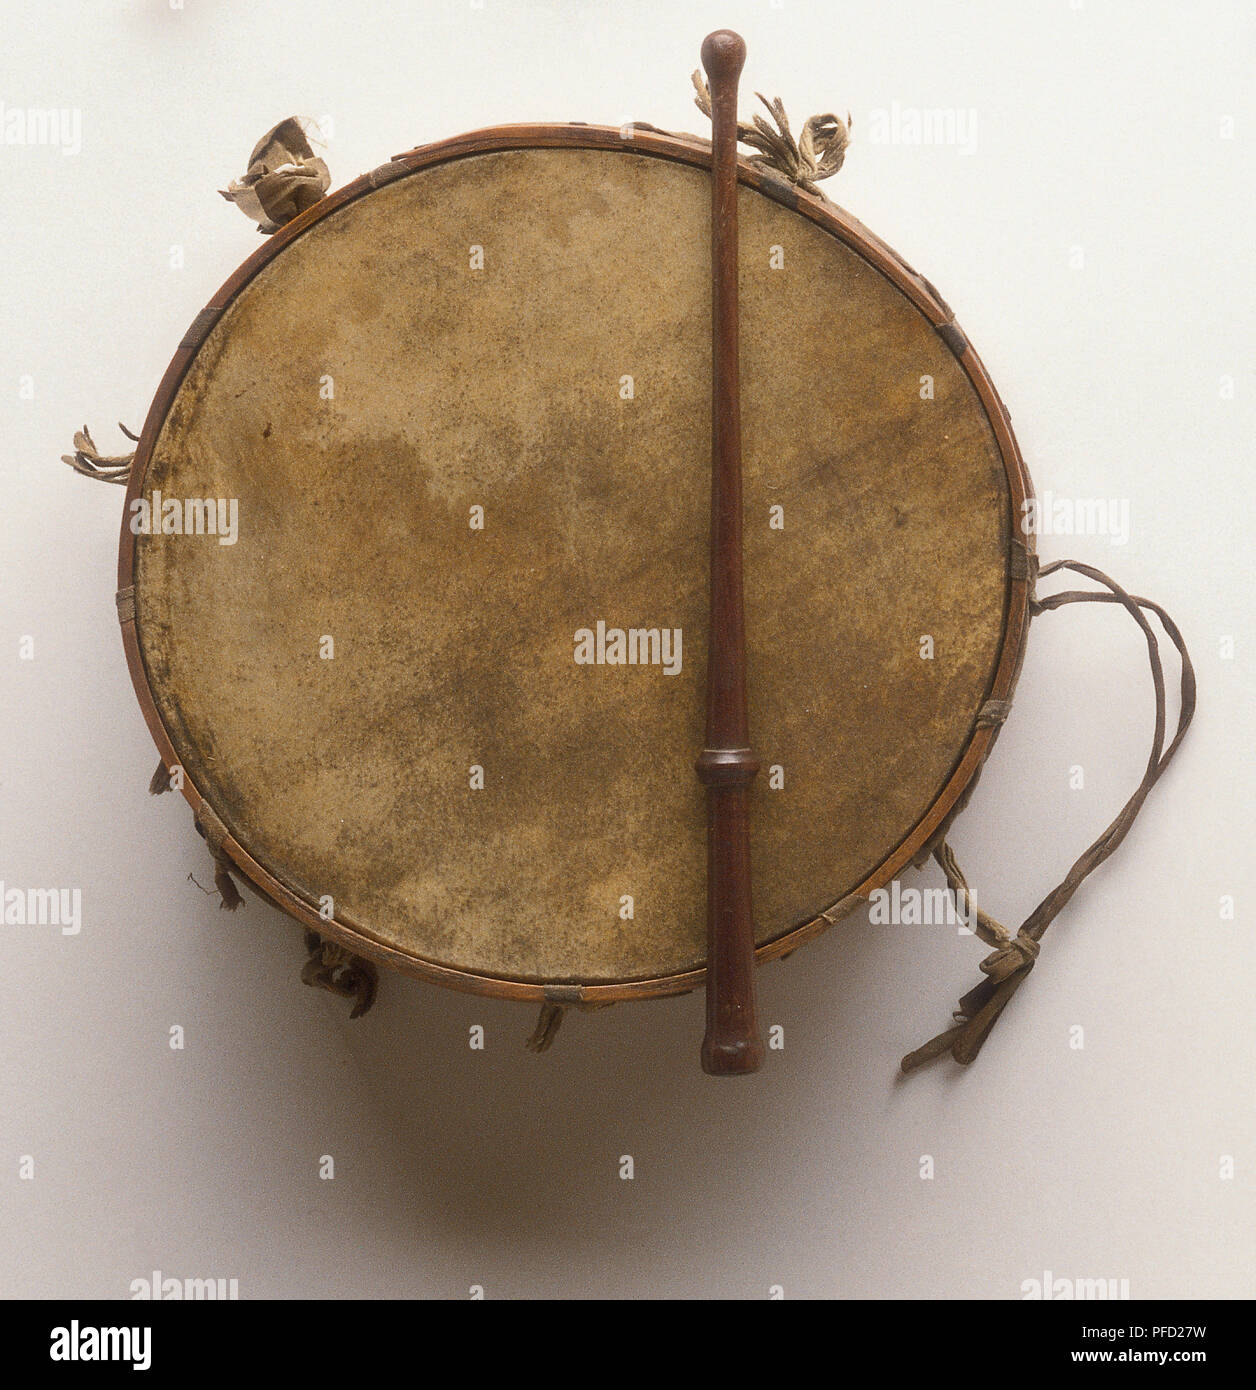 Tabor, gemeinsame Drum im mittelalterlichen Europa Stockfoto